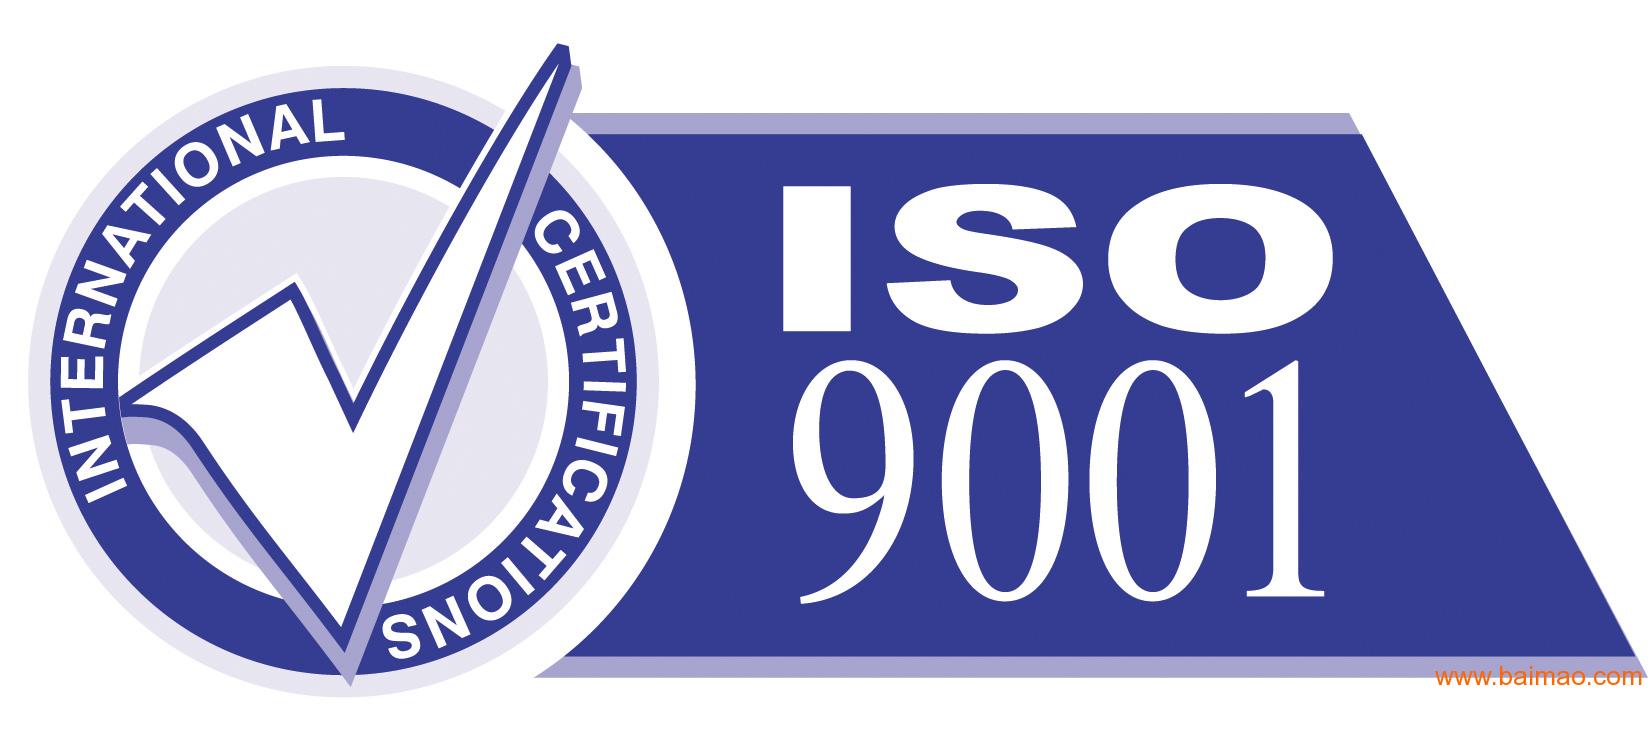 顺德iso9001认证咨询公司